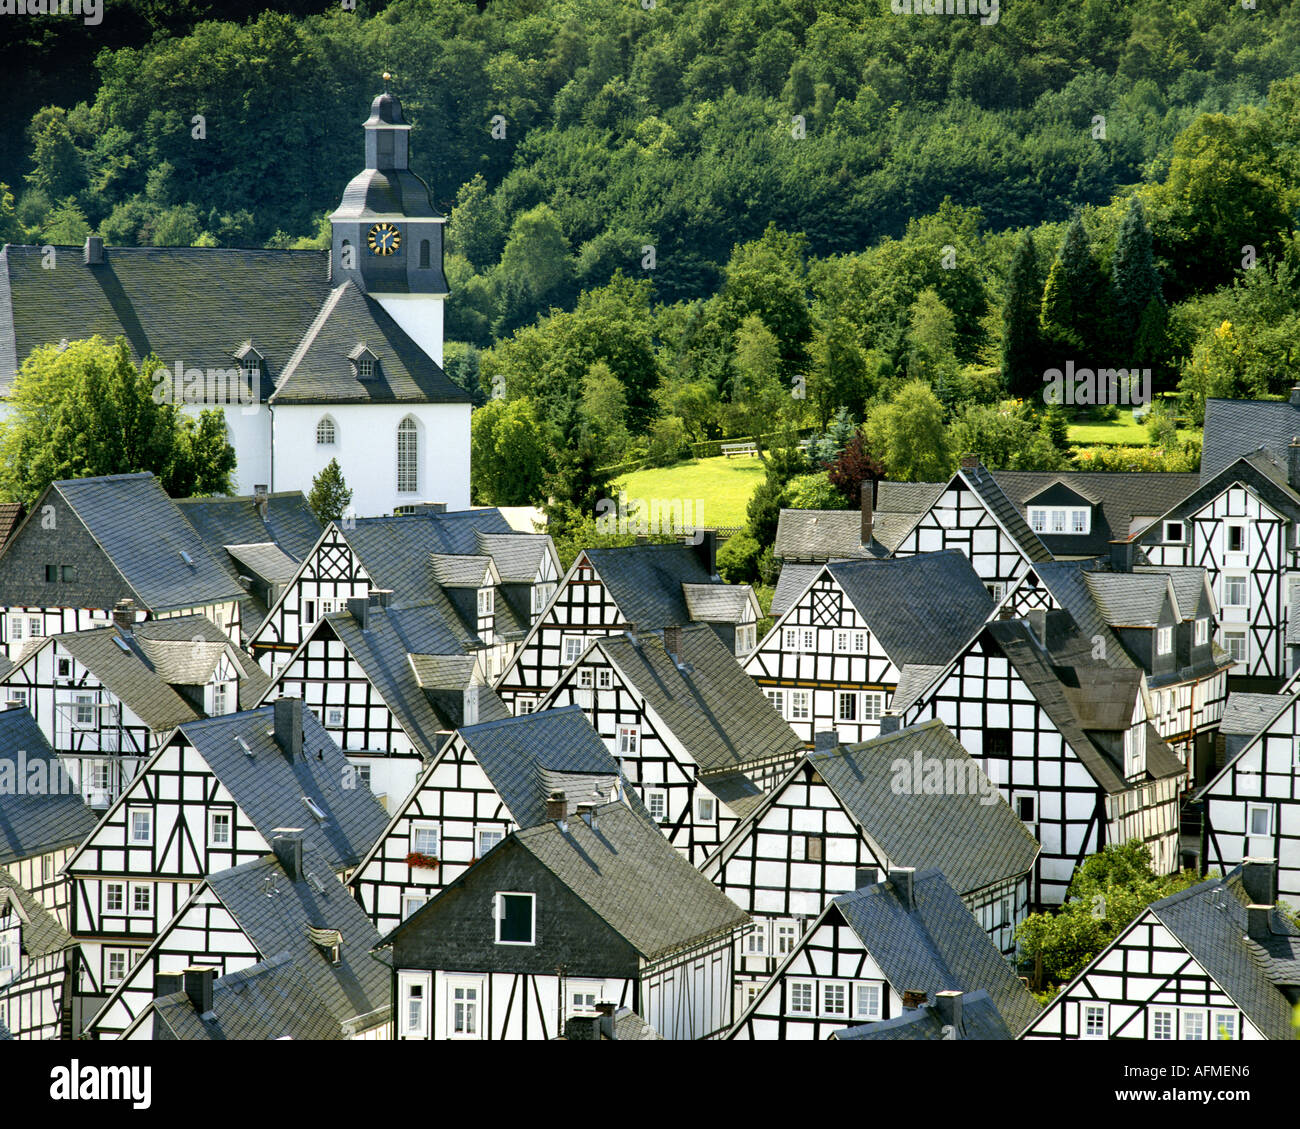 DE - RENANIA DEL NORD-VESTFALIA: pittoresco villaggio di Freudenberg Foto Stock